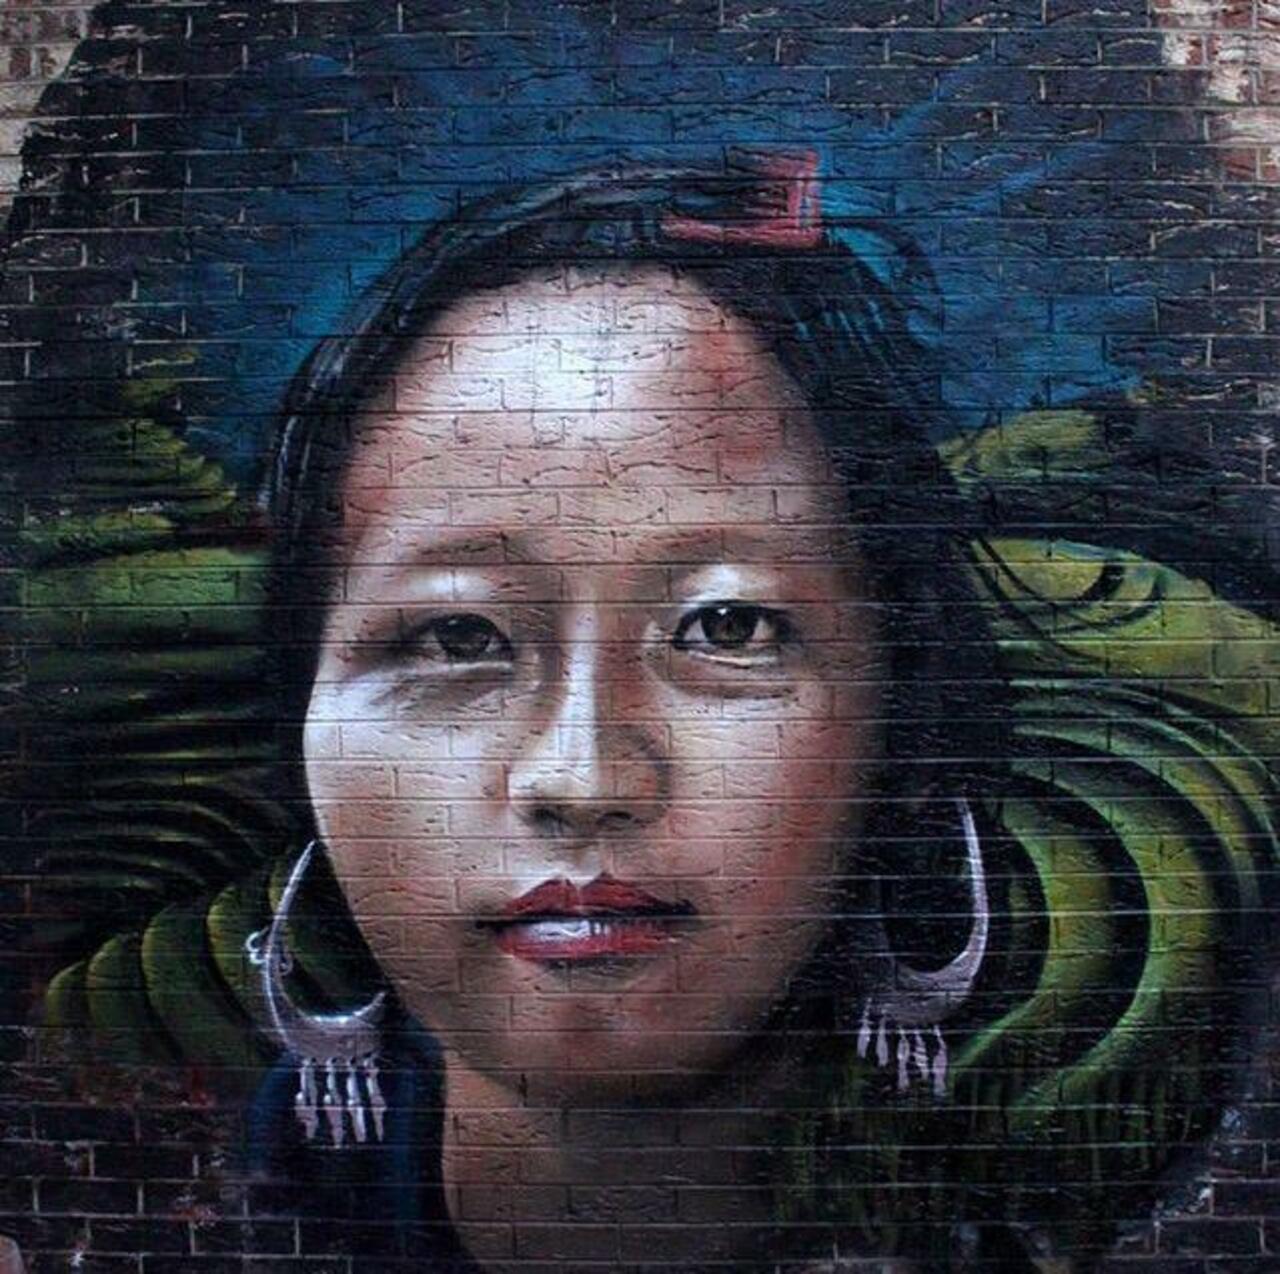 RT @wearpure_com: Street Art by cto 

#art #mural #graffiti #streetart http://t.co/fpCUJ2n9pm